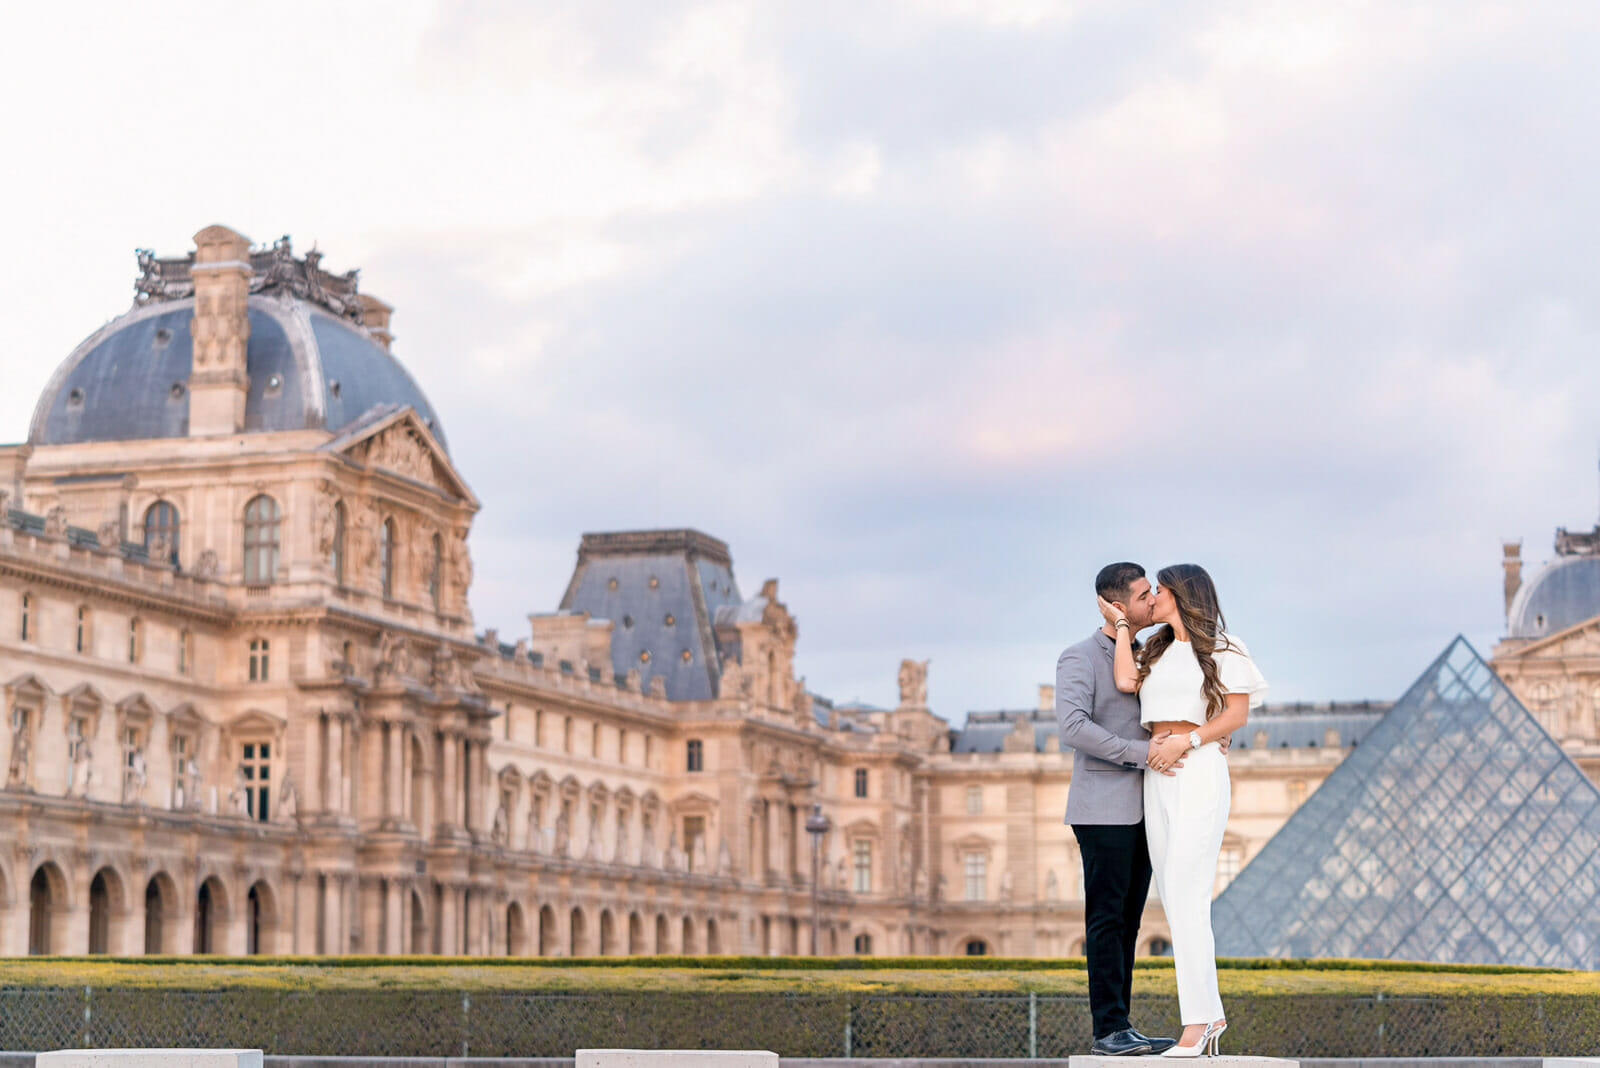 Paris engagement photos at the Louvre Museum